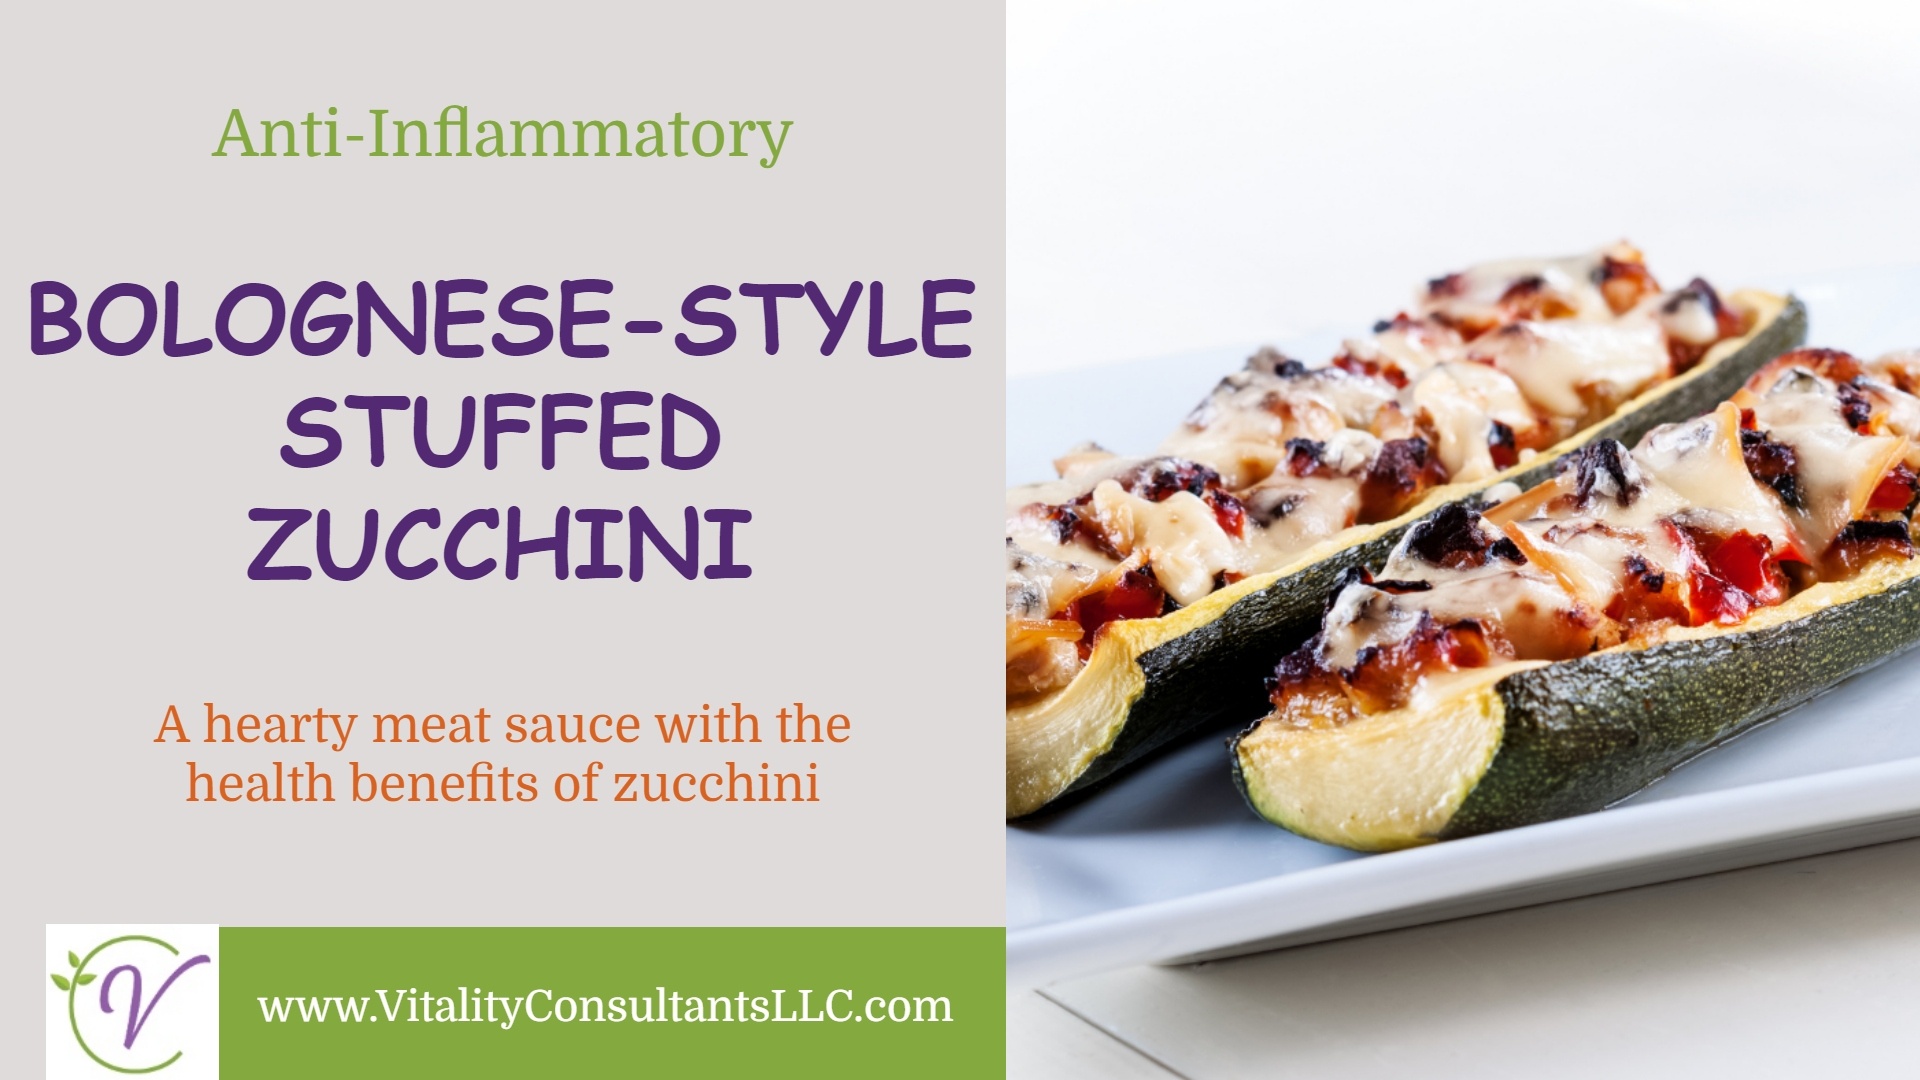 Bolognese-Style Stuffed Zucchini